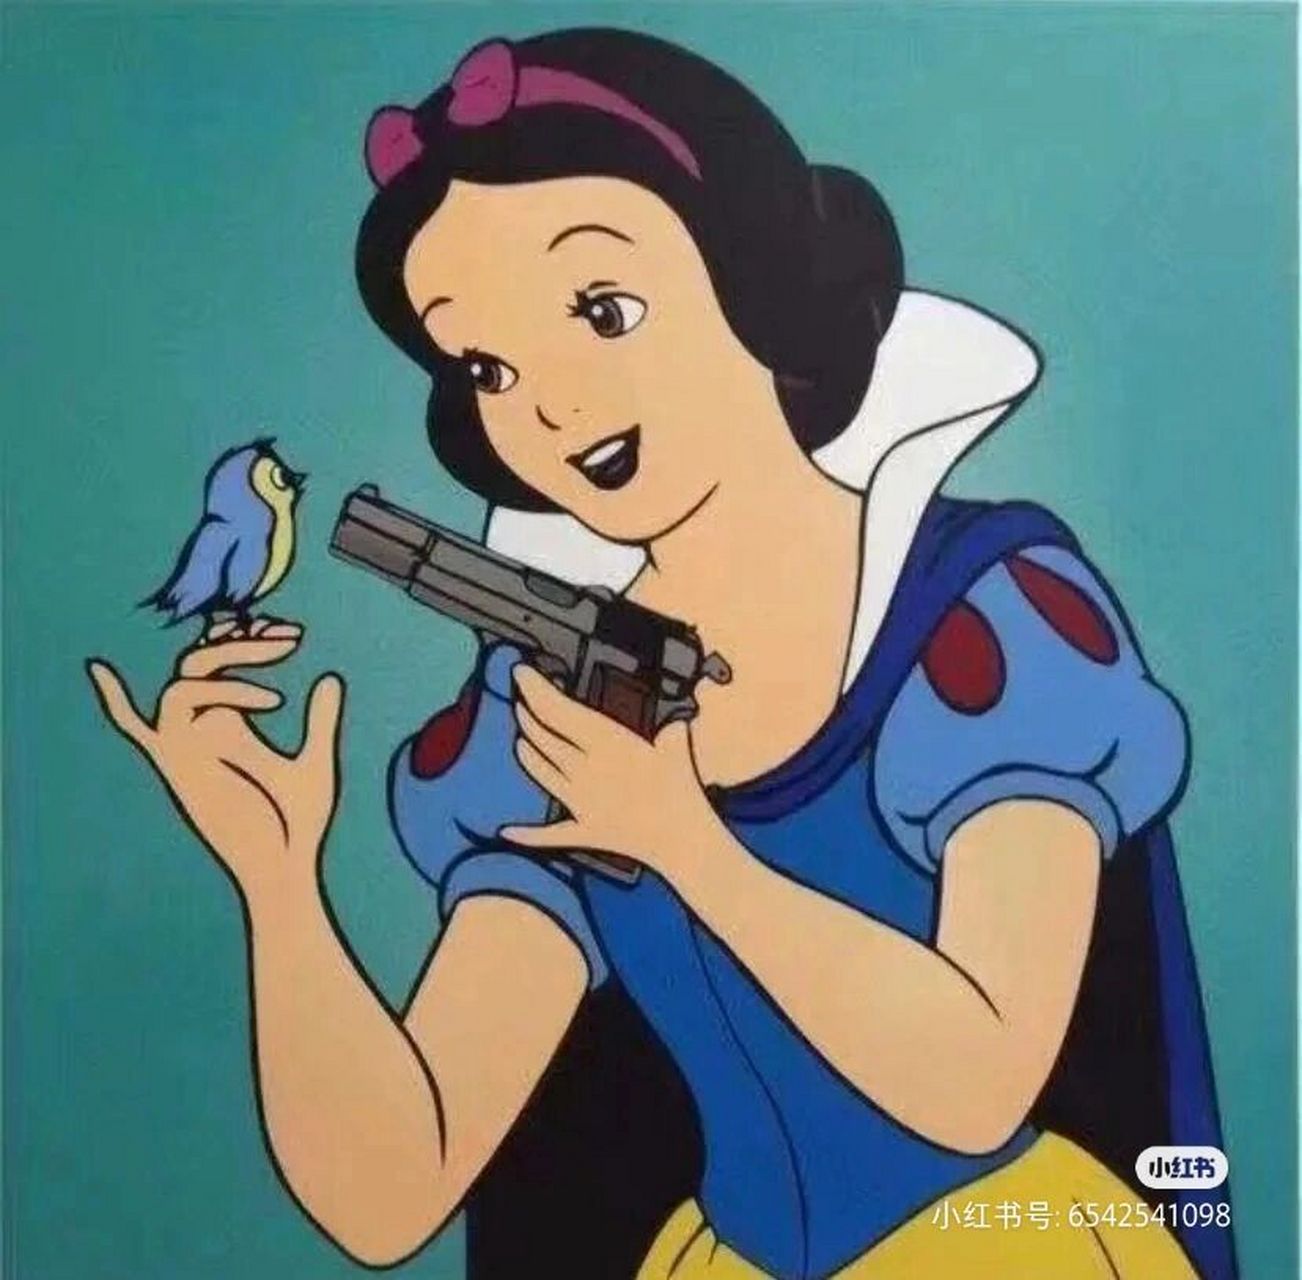 迪士尼公主表情包沙雕图片